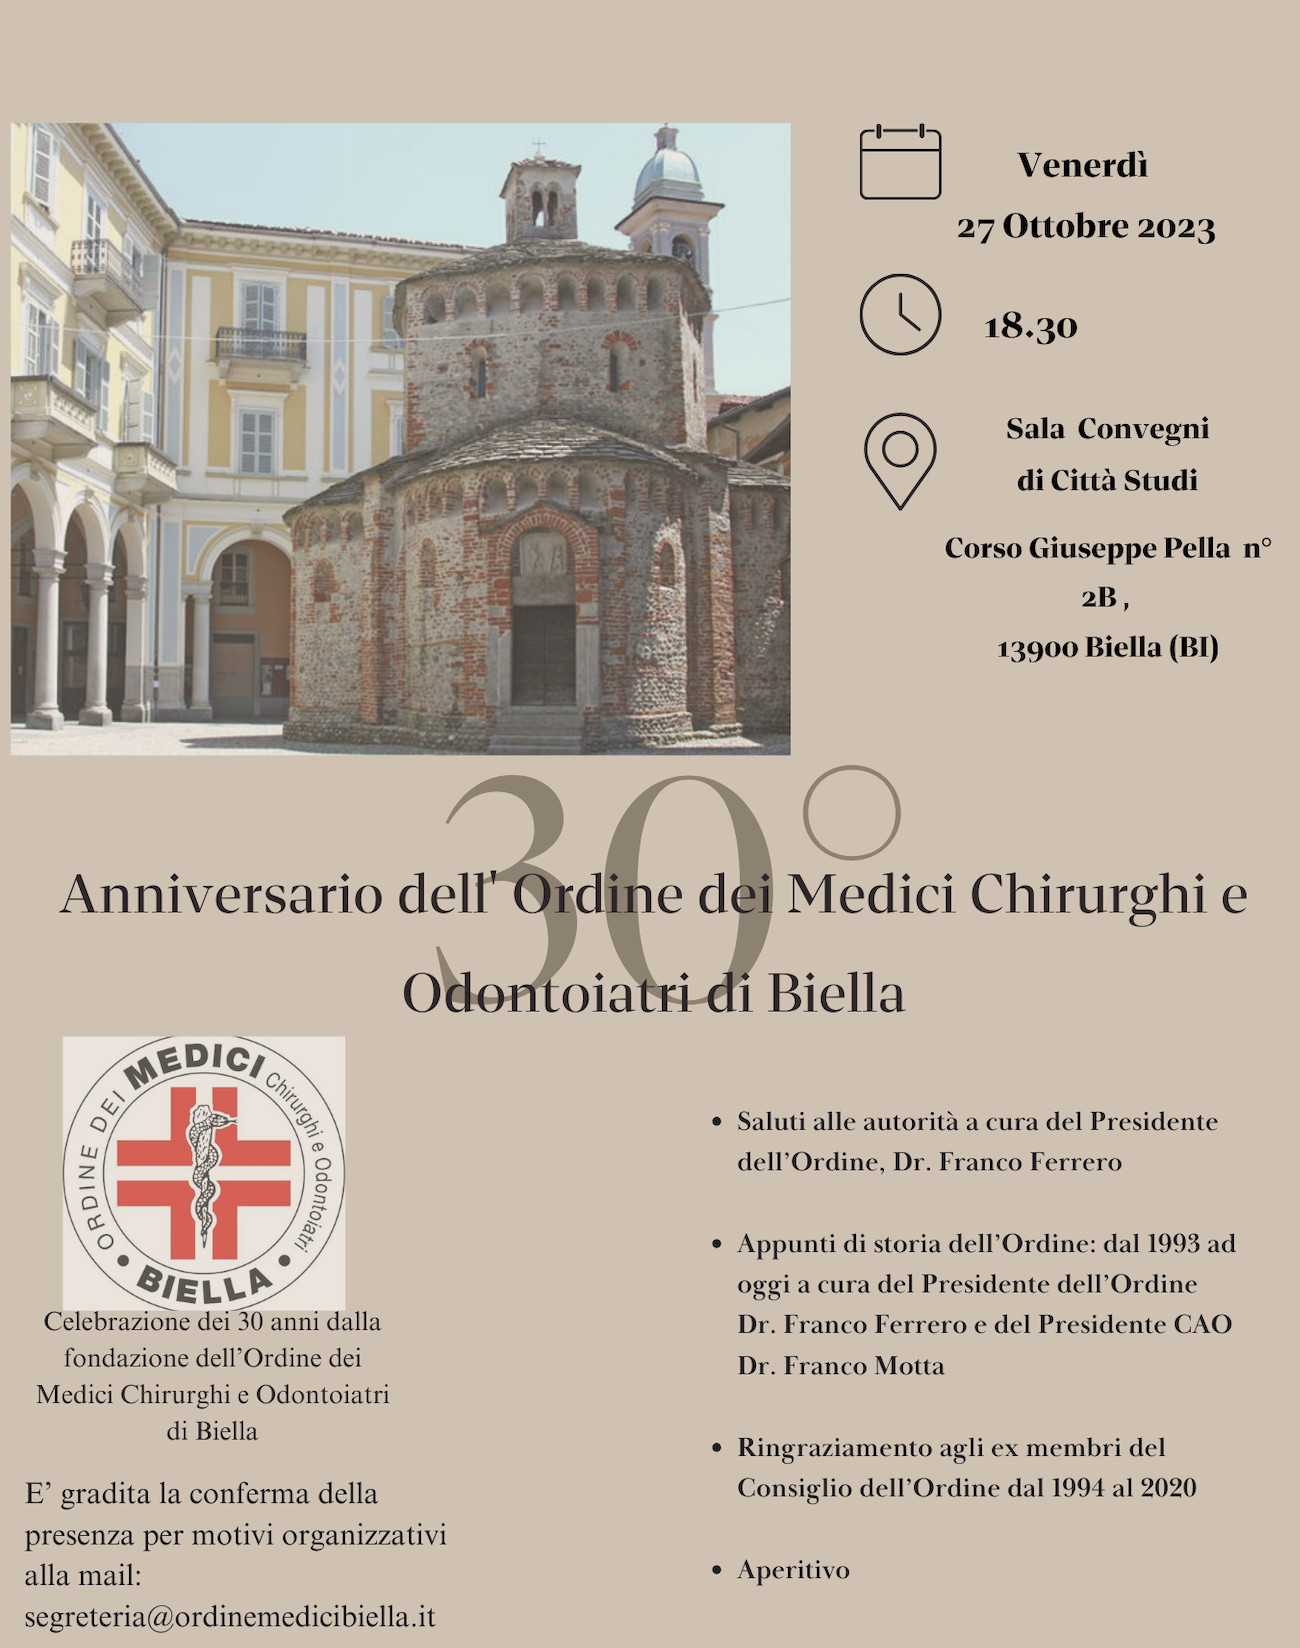 Anniversario dell' Ordine dei Medici Chirurghi e Odontoiatri di Biella 1993-2023